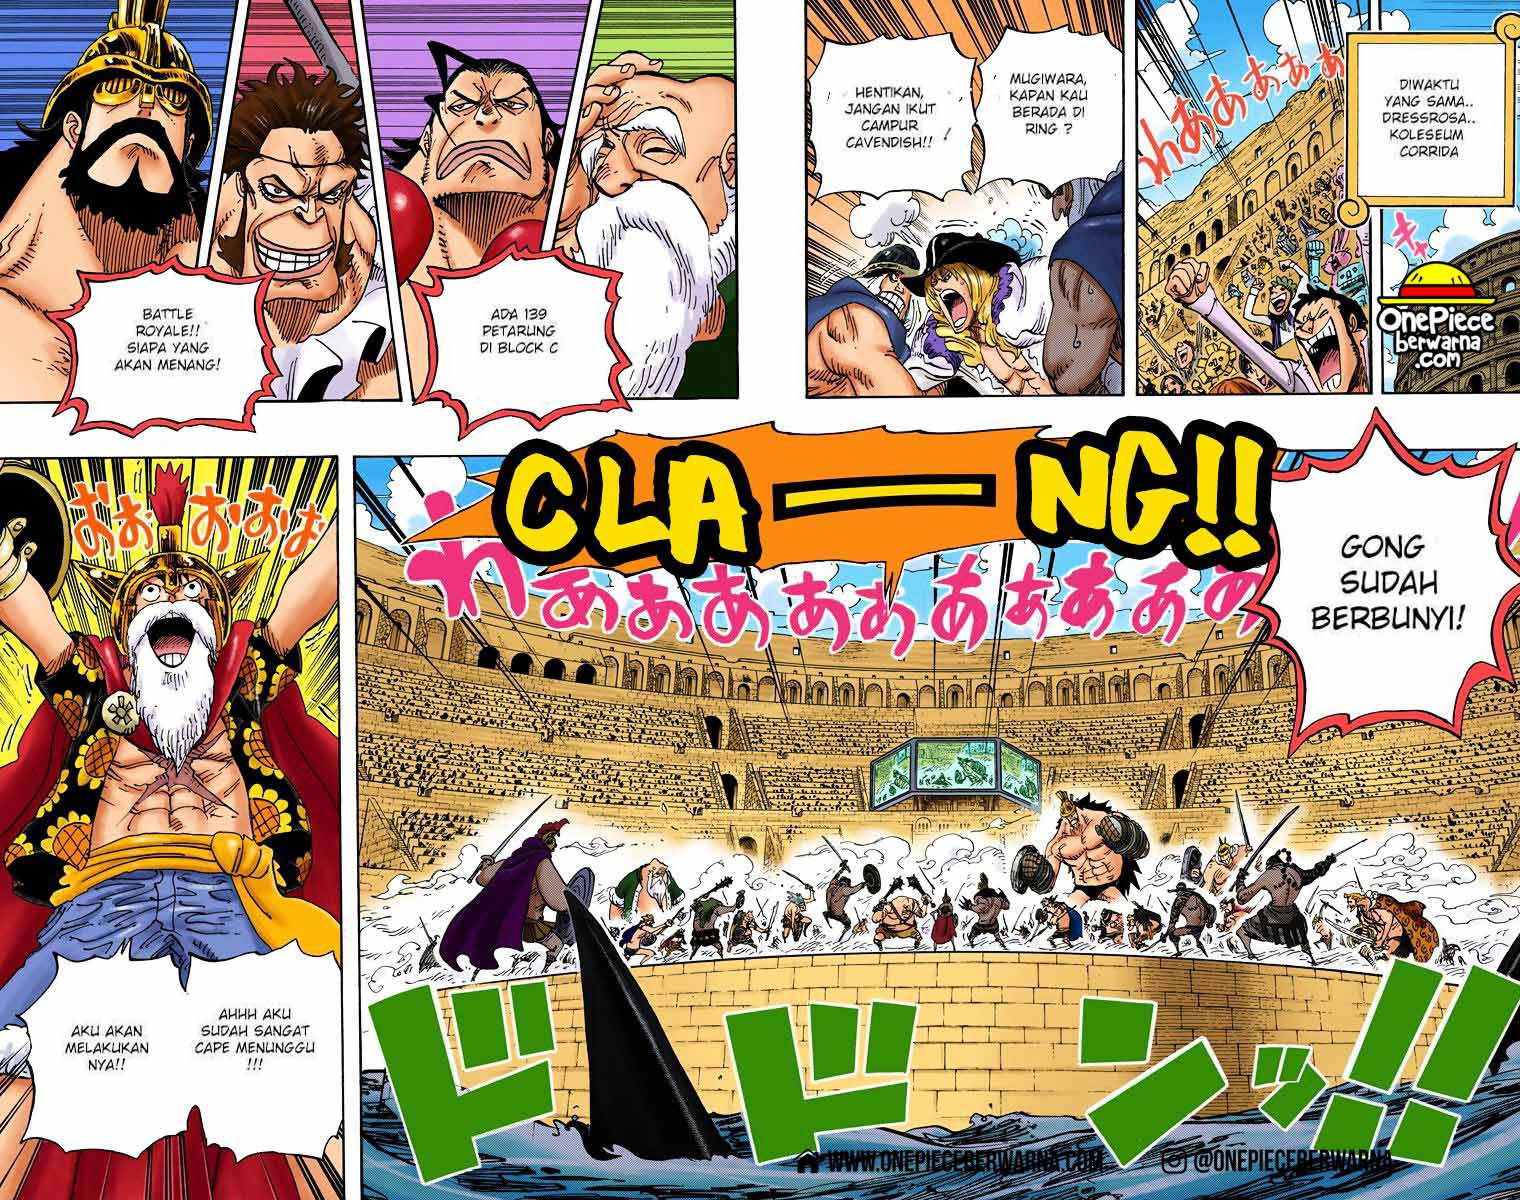 One Piece Berwarna Chapter 712